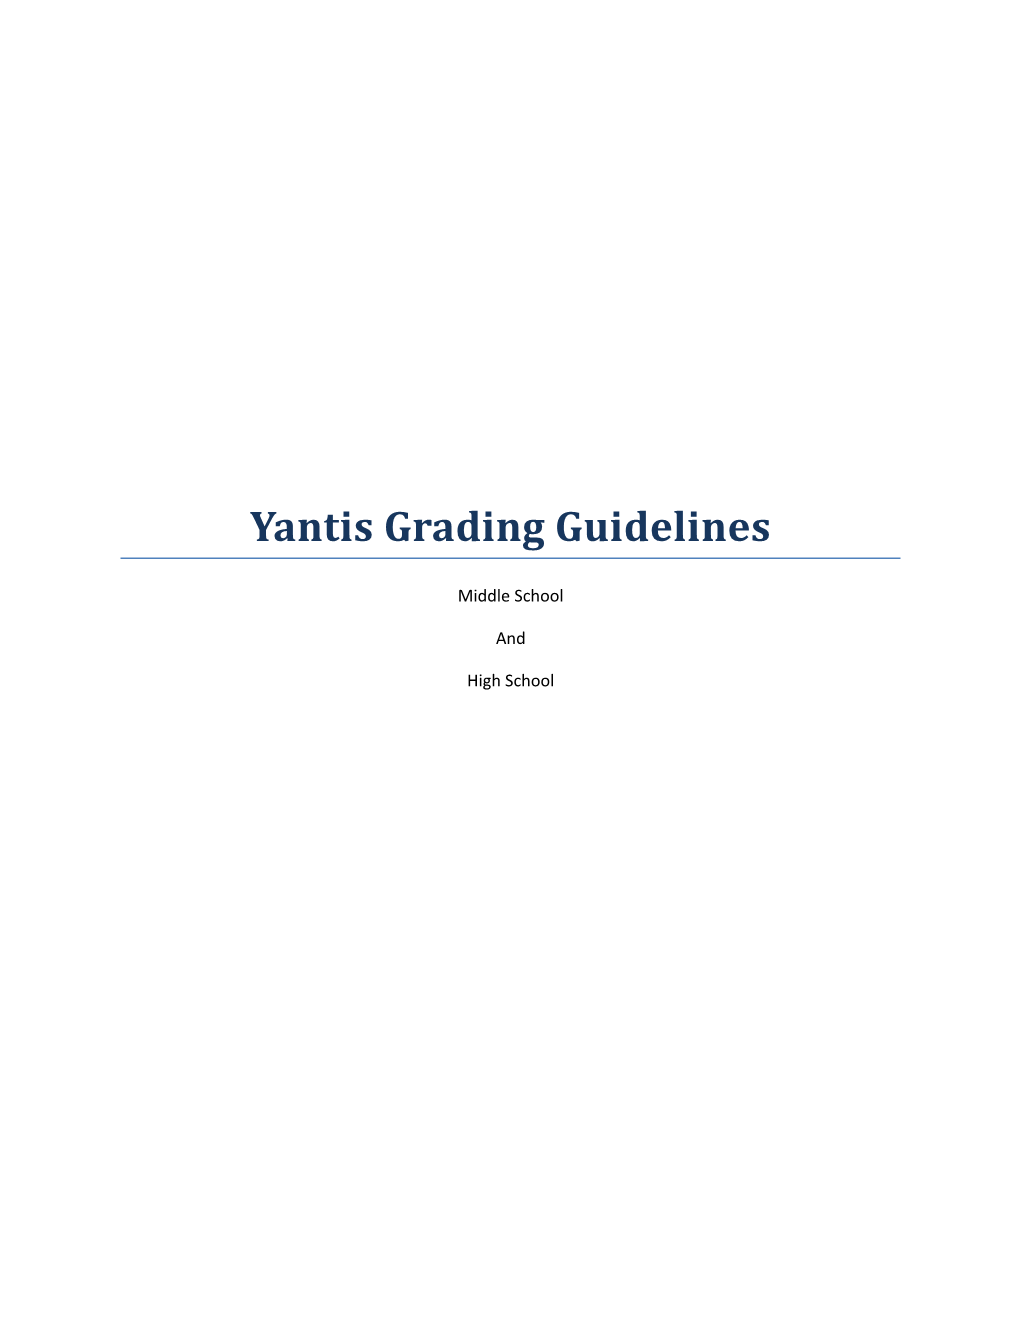 Yantis Grading Guidelines